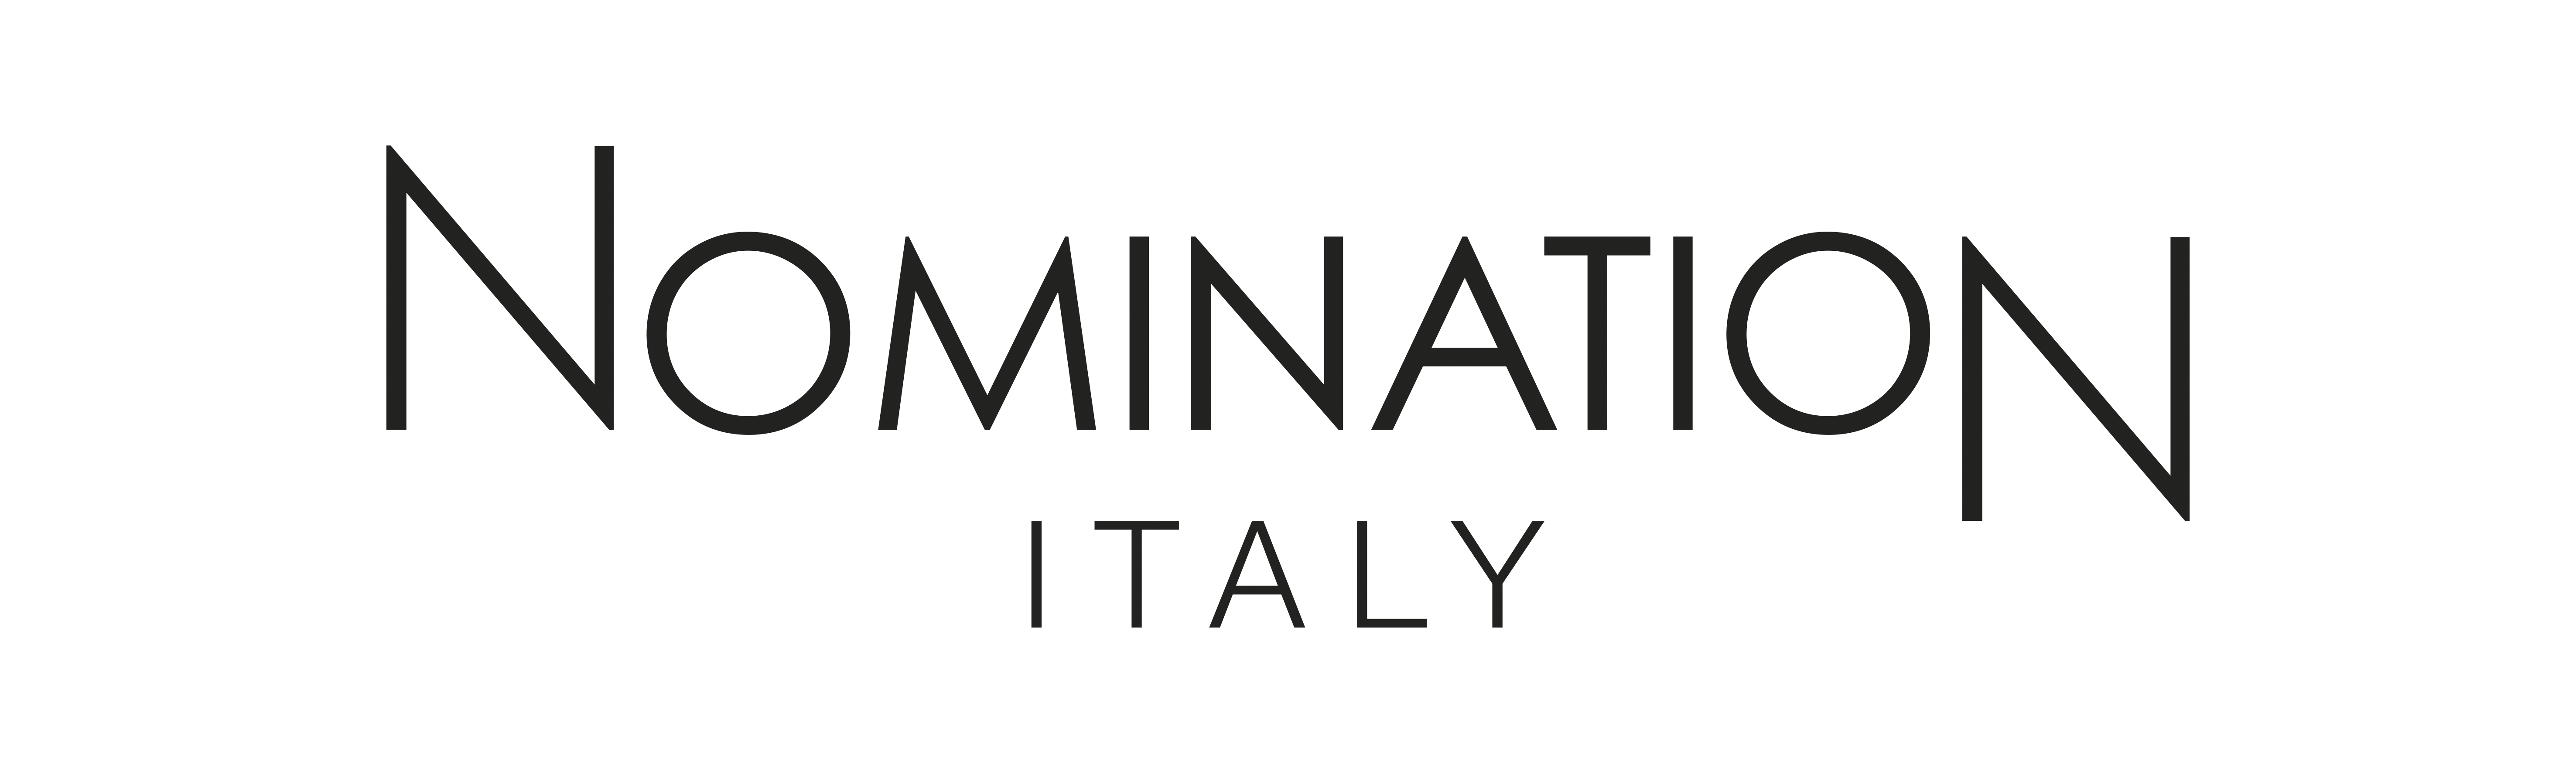 NOMINATION_ITALY